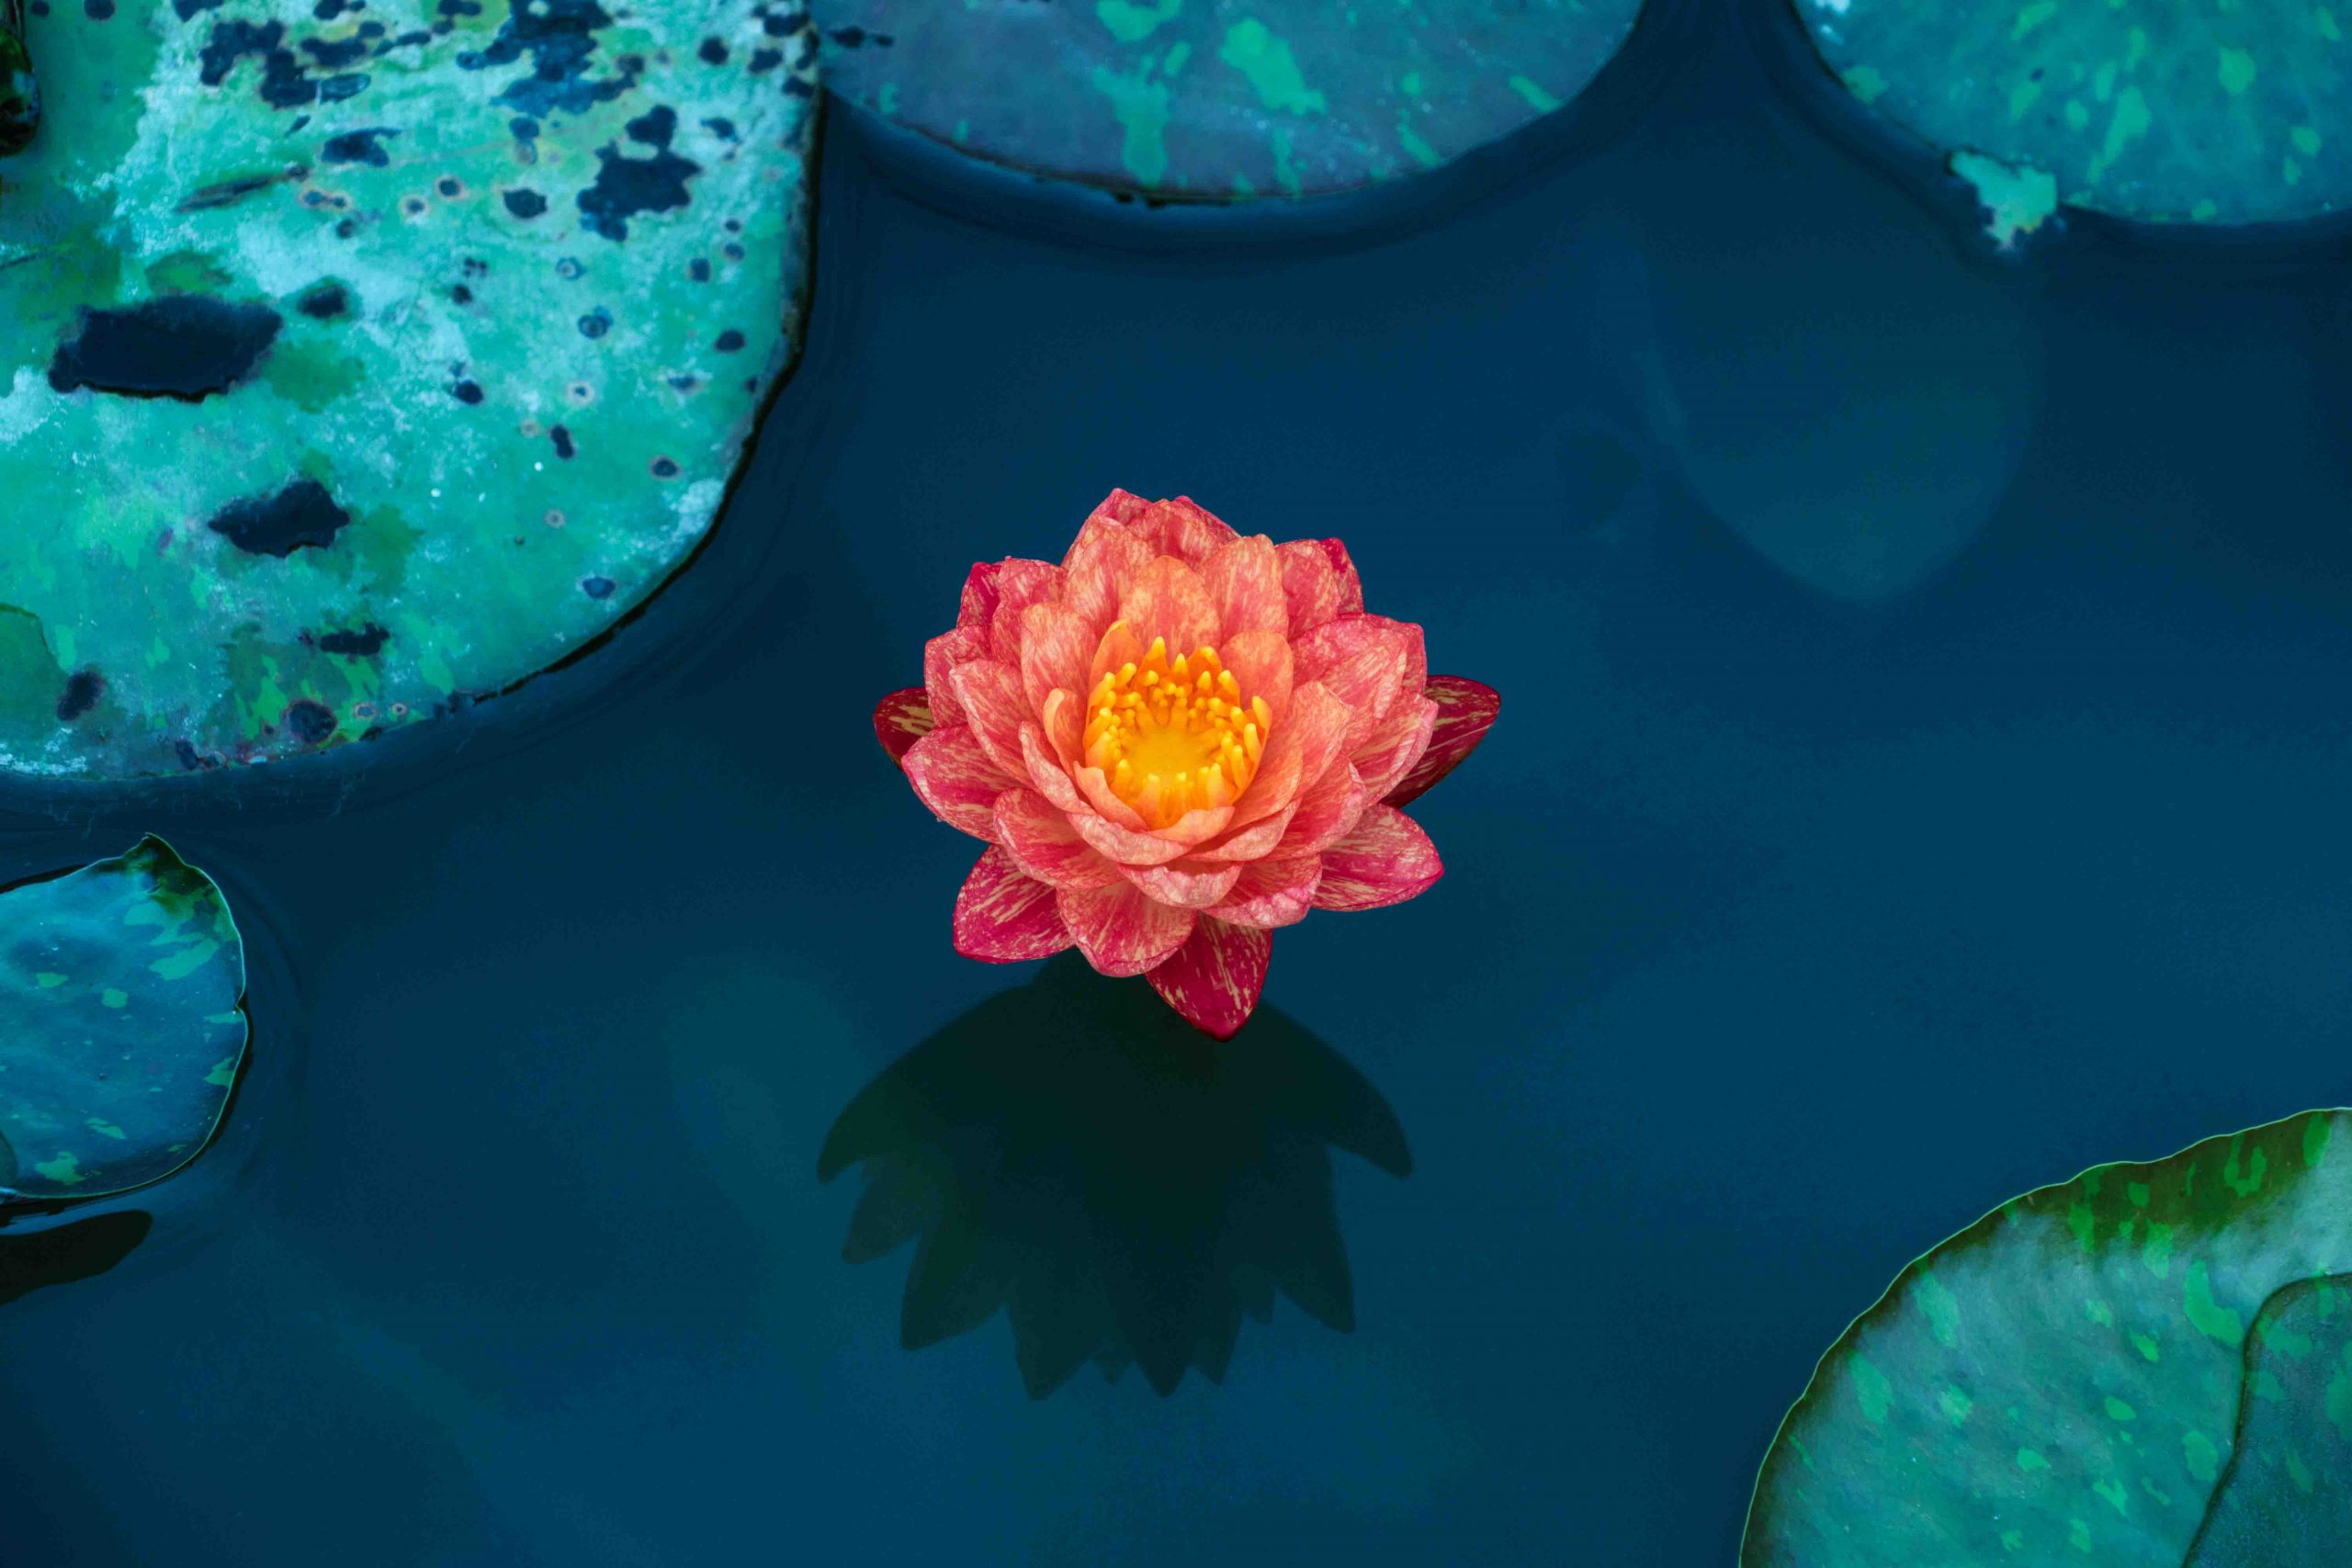 Hoa sen là biểu tượng của sự thanh tịnh và sự nở rộ của sự sống. Nếu bạn muốn tìm hiểu thêm về vẻ đẹp độc đáo của hoa sen, hãy xem hình ảnh liên quan đến từ khóa này.